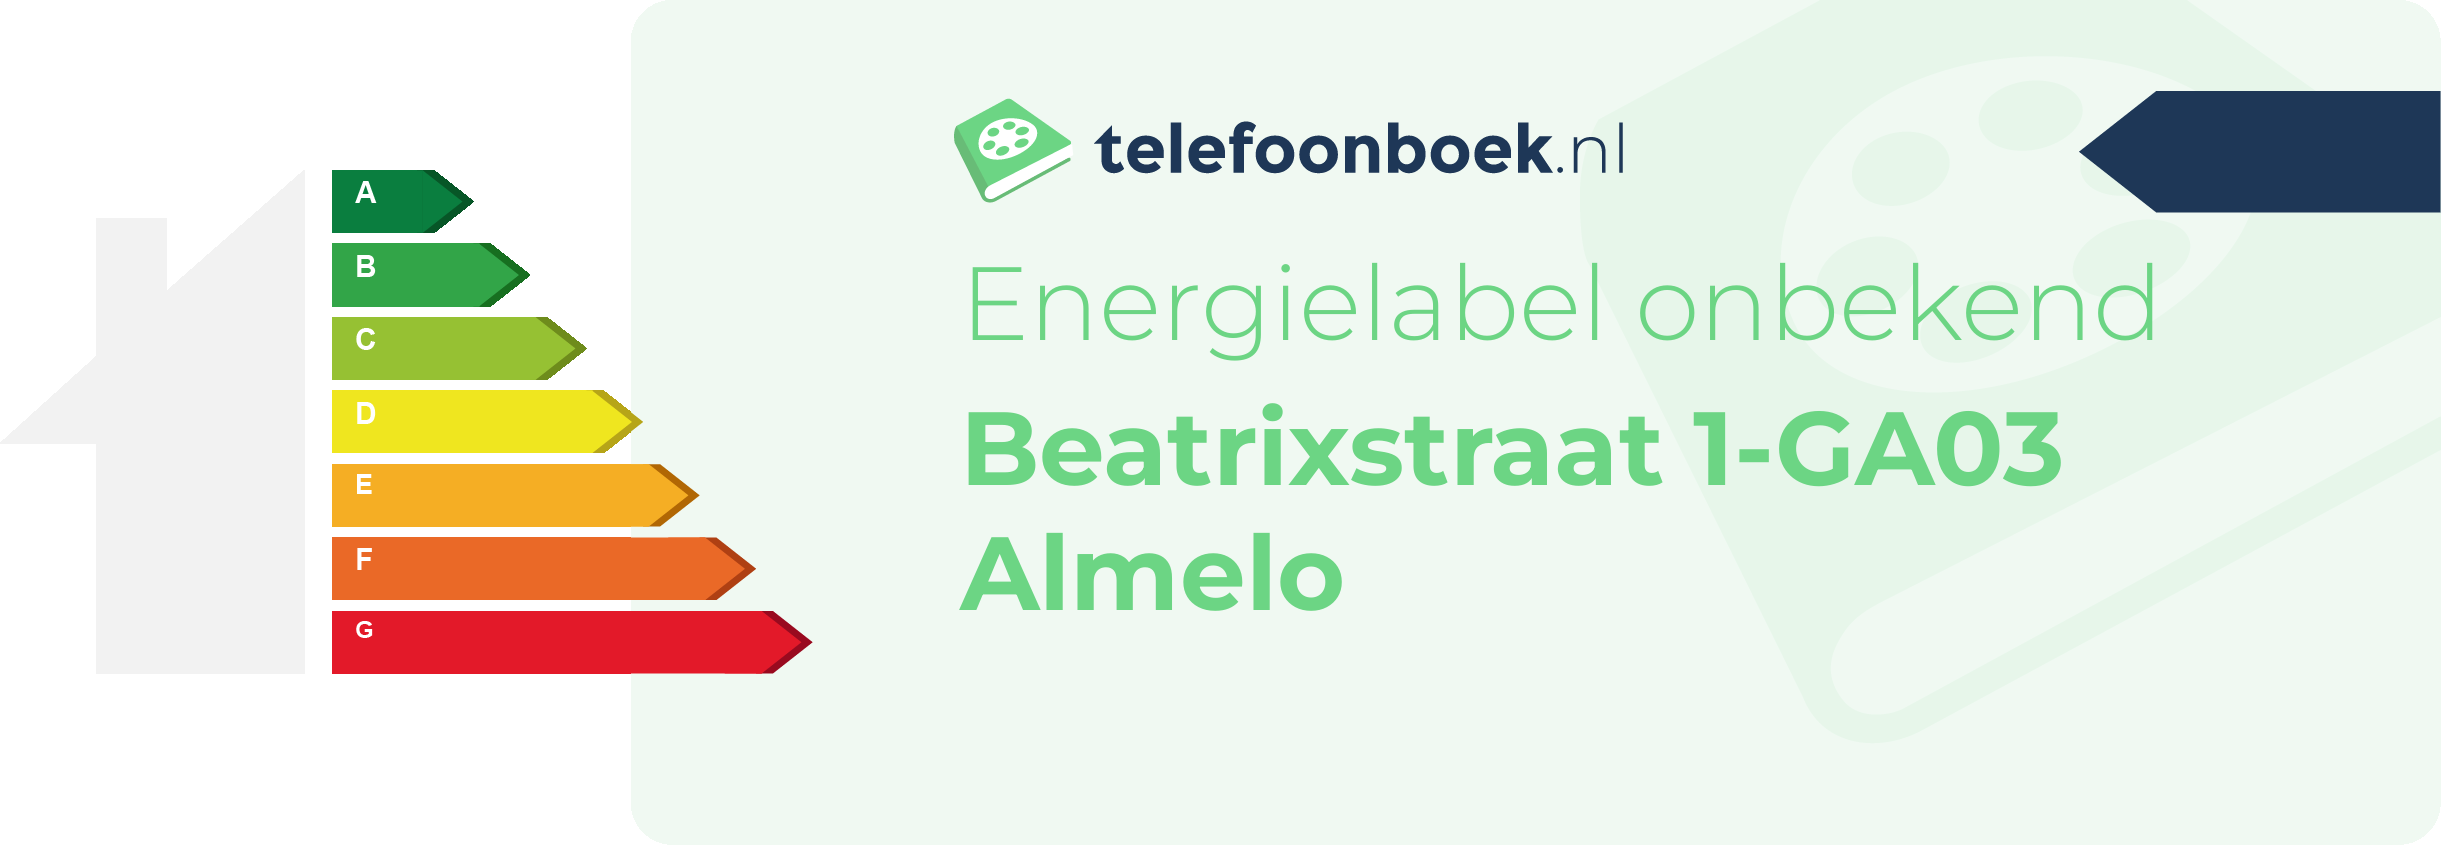 Energielabel Beatrixstraat 1-GA03 Almelo